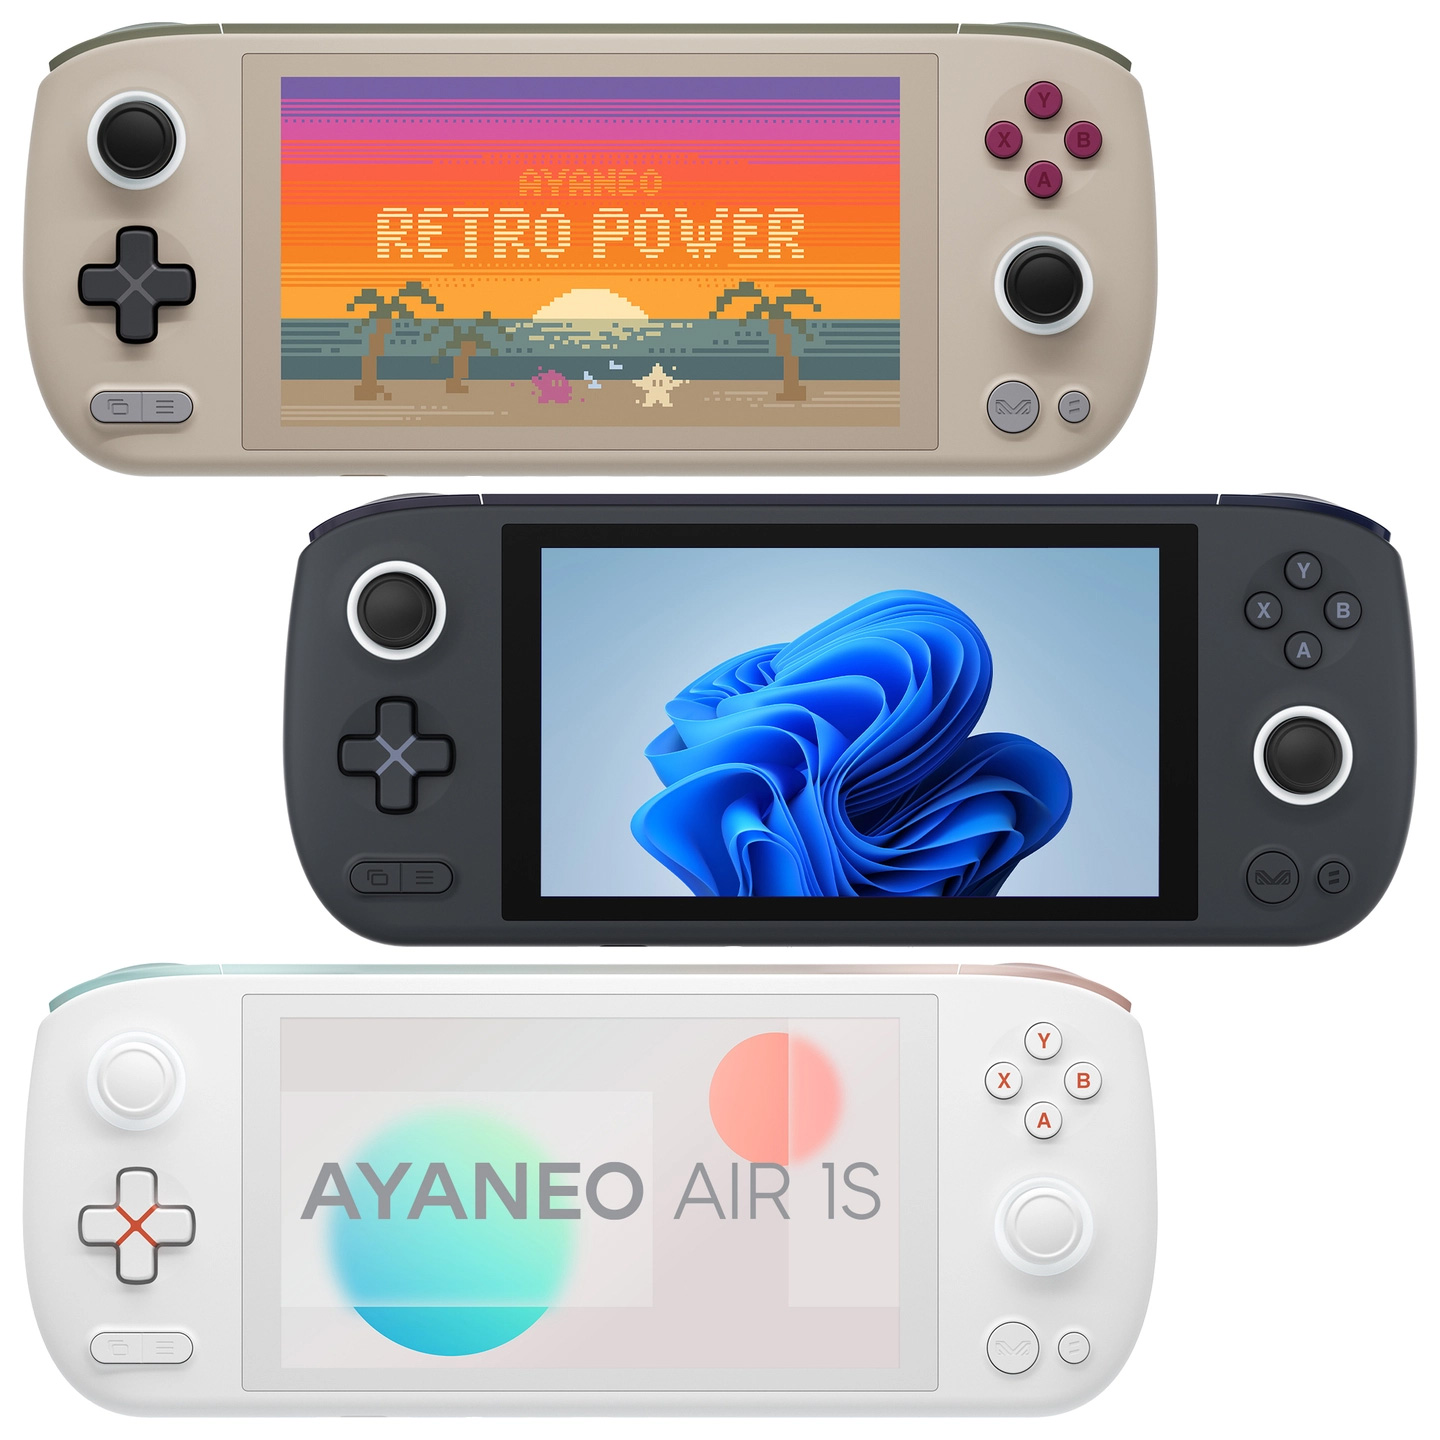 重さ約450gの携帯型ゲームPC「AYANEO AIR 1S」が11月11日に発売。事前 